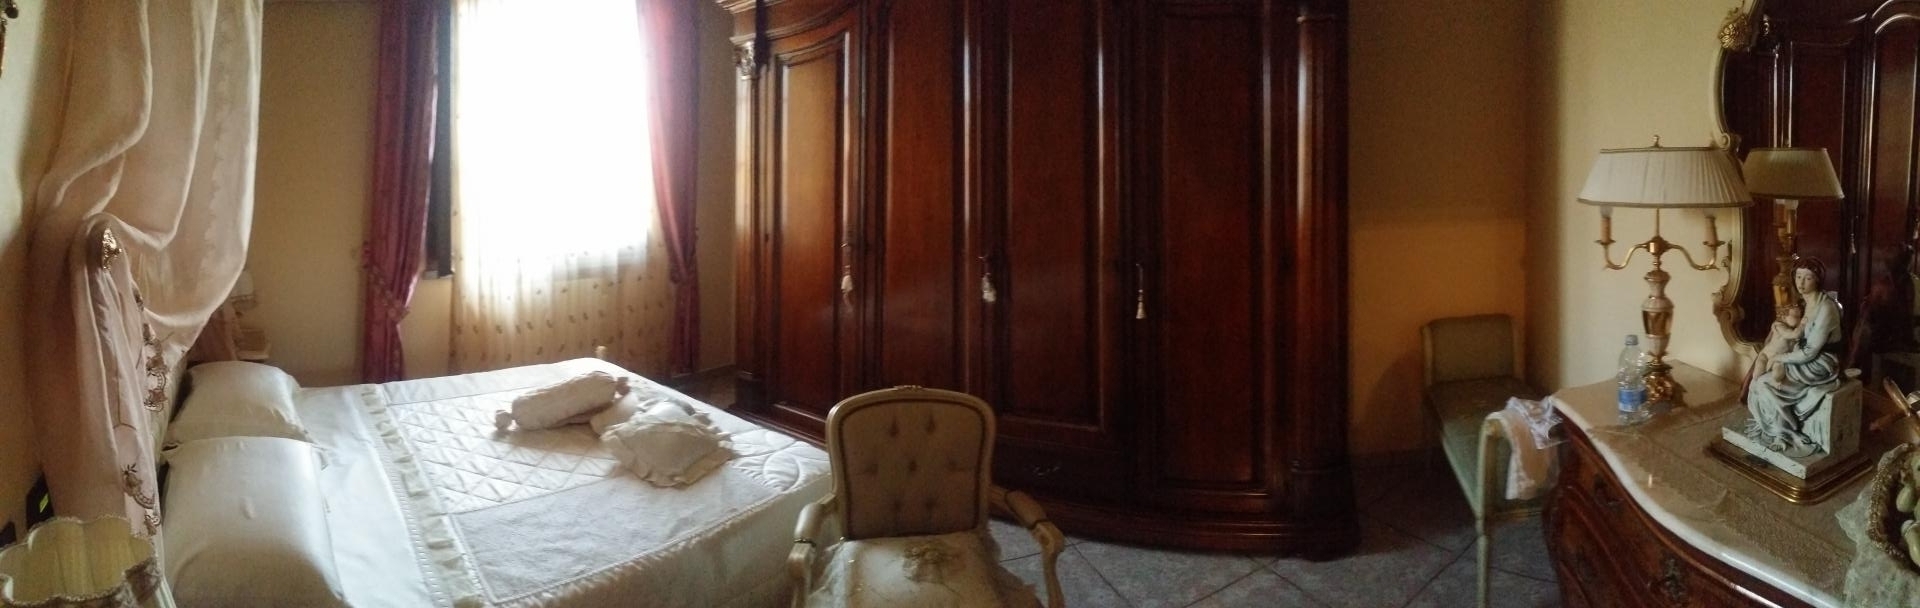 Villa con box doppio in larghezza Reggio Emilia pieve